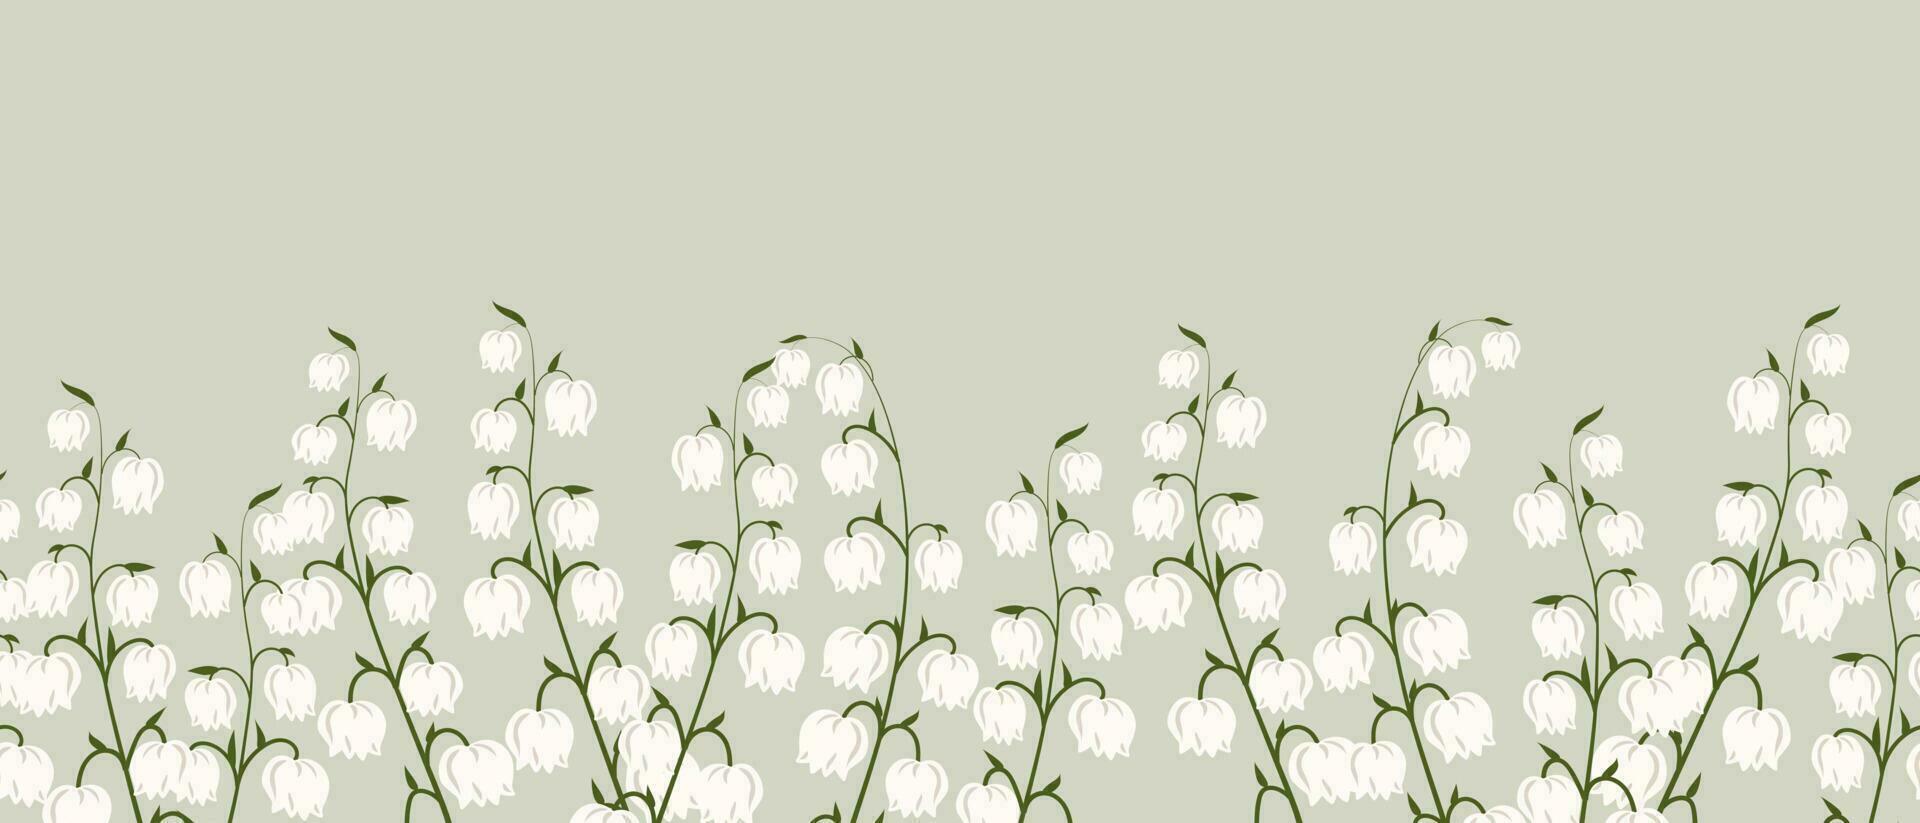 grens, voorjaar bloemen lelies van de vallei. voorjaar achtergrond met kopiëren ruimte. illustratie, vector